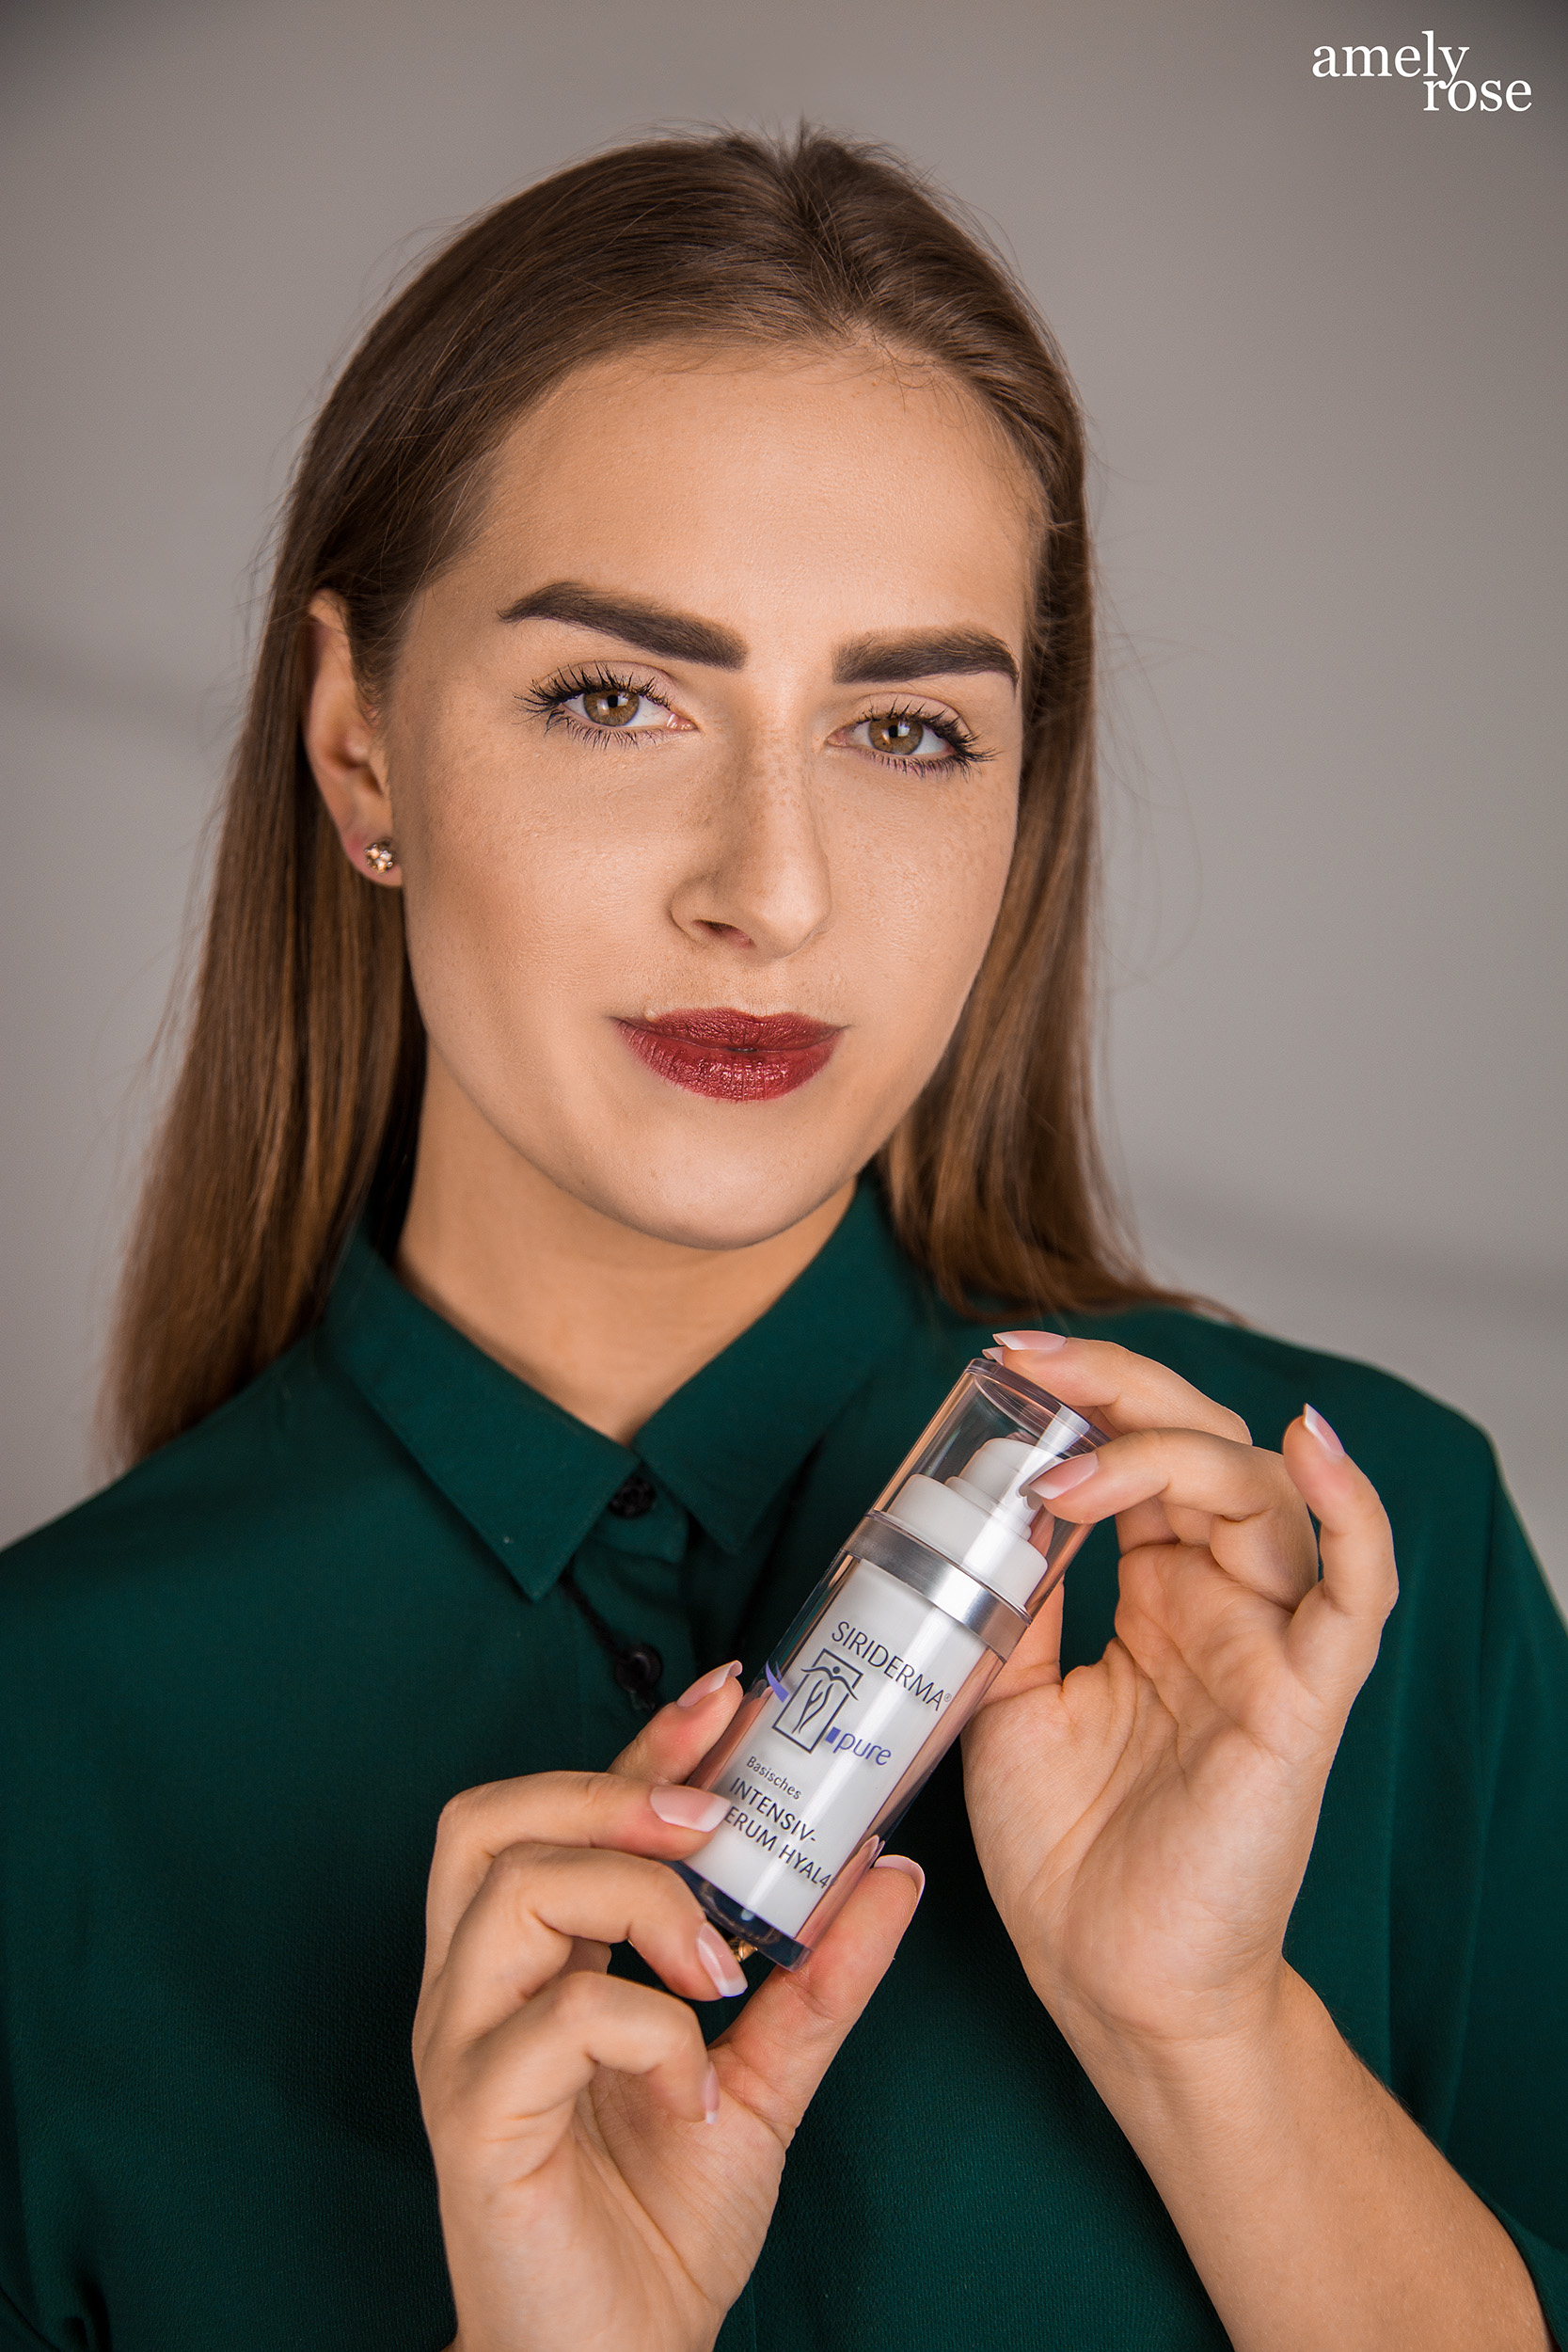 Amely Rose testet basische Pflegeprodukte im Beautyguide - vegane Kosmetik von siriderma Fashionportrait